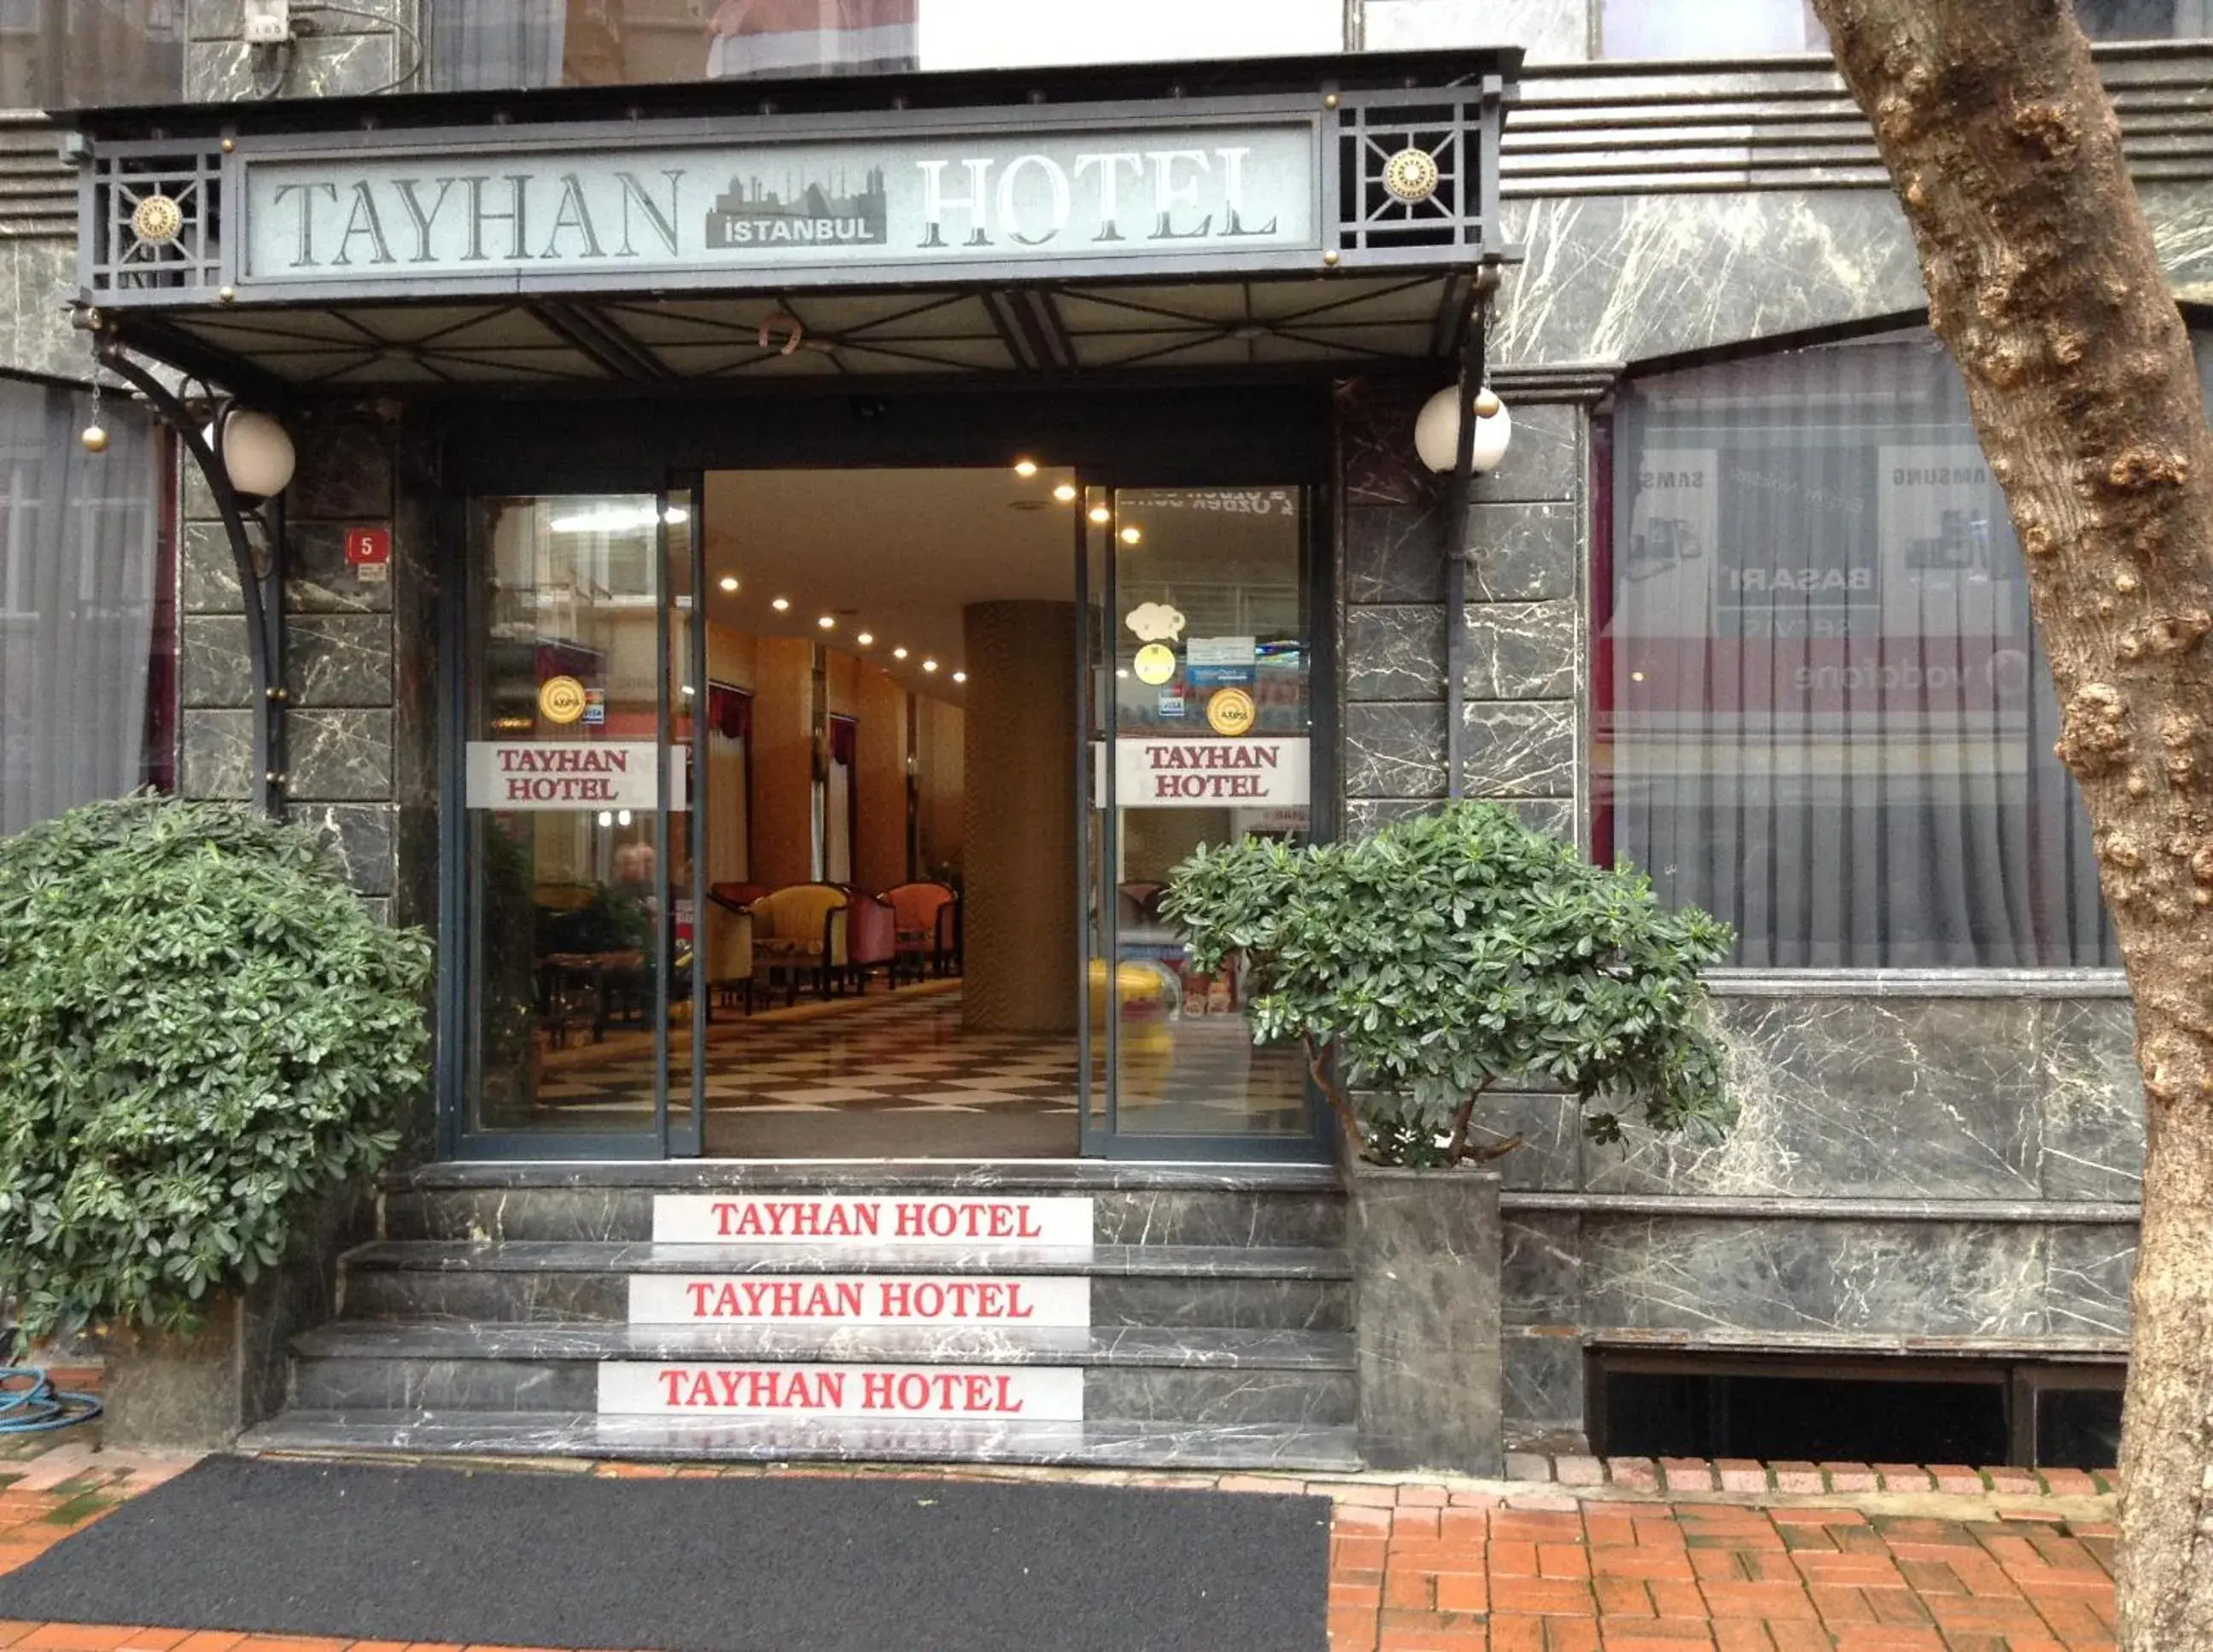 Facade/entrance in Tayhan Hotel